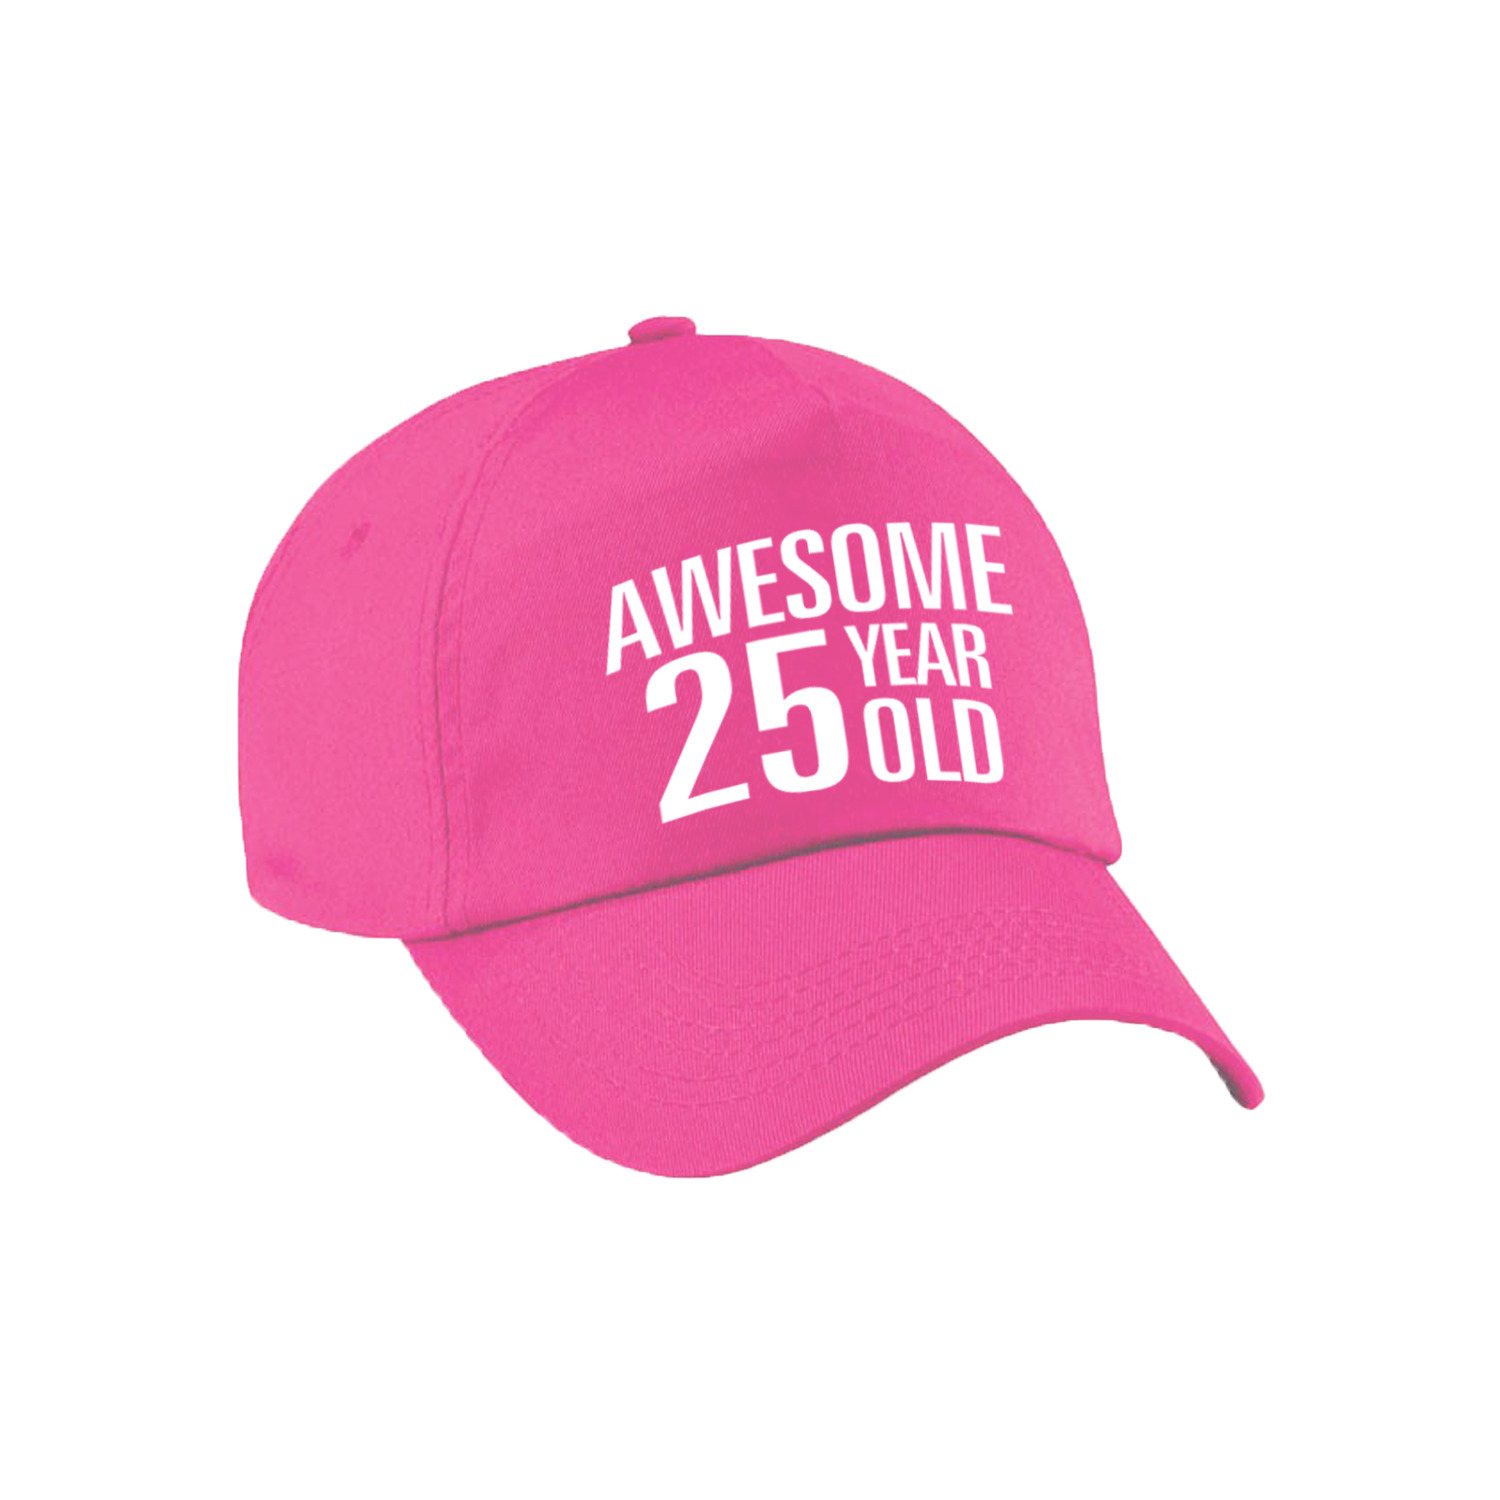 Awesome 25 year old verjaardag pet / cap roze voor dames en heren